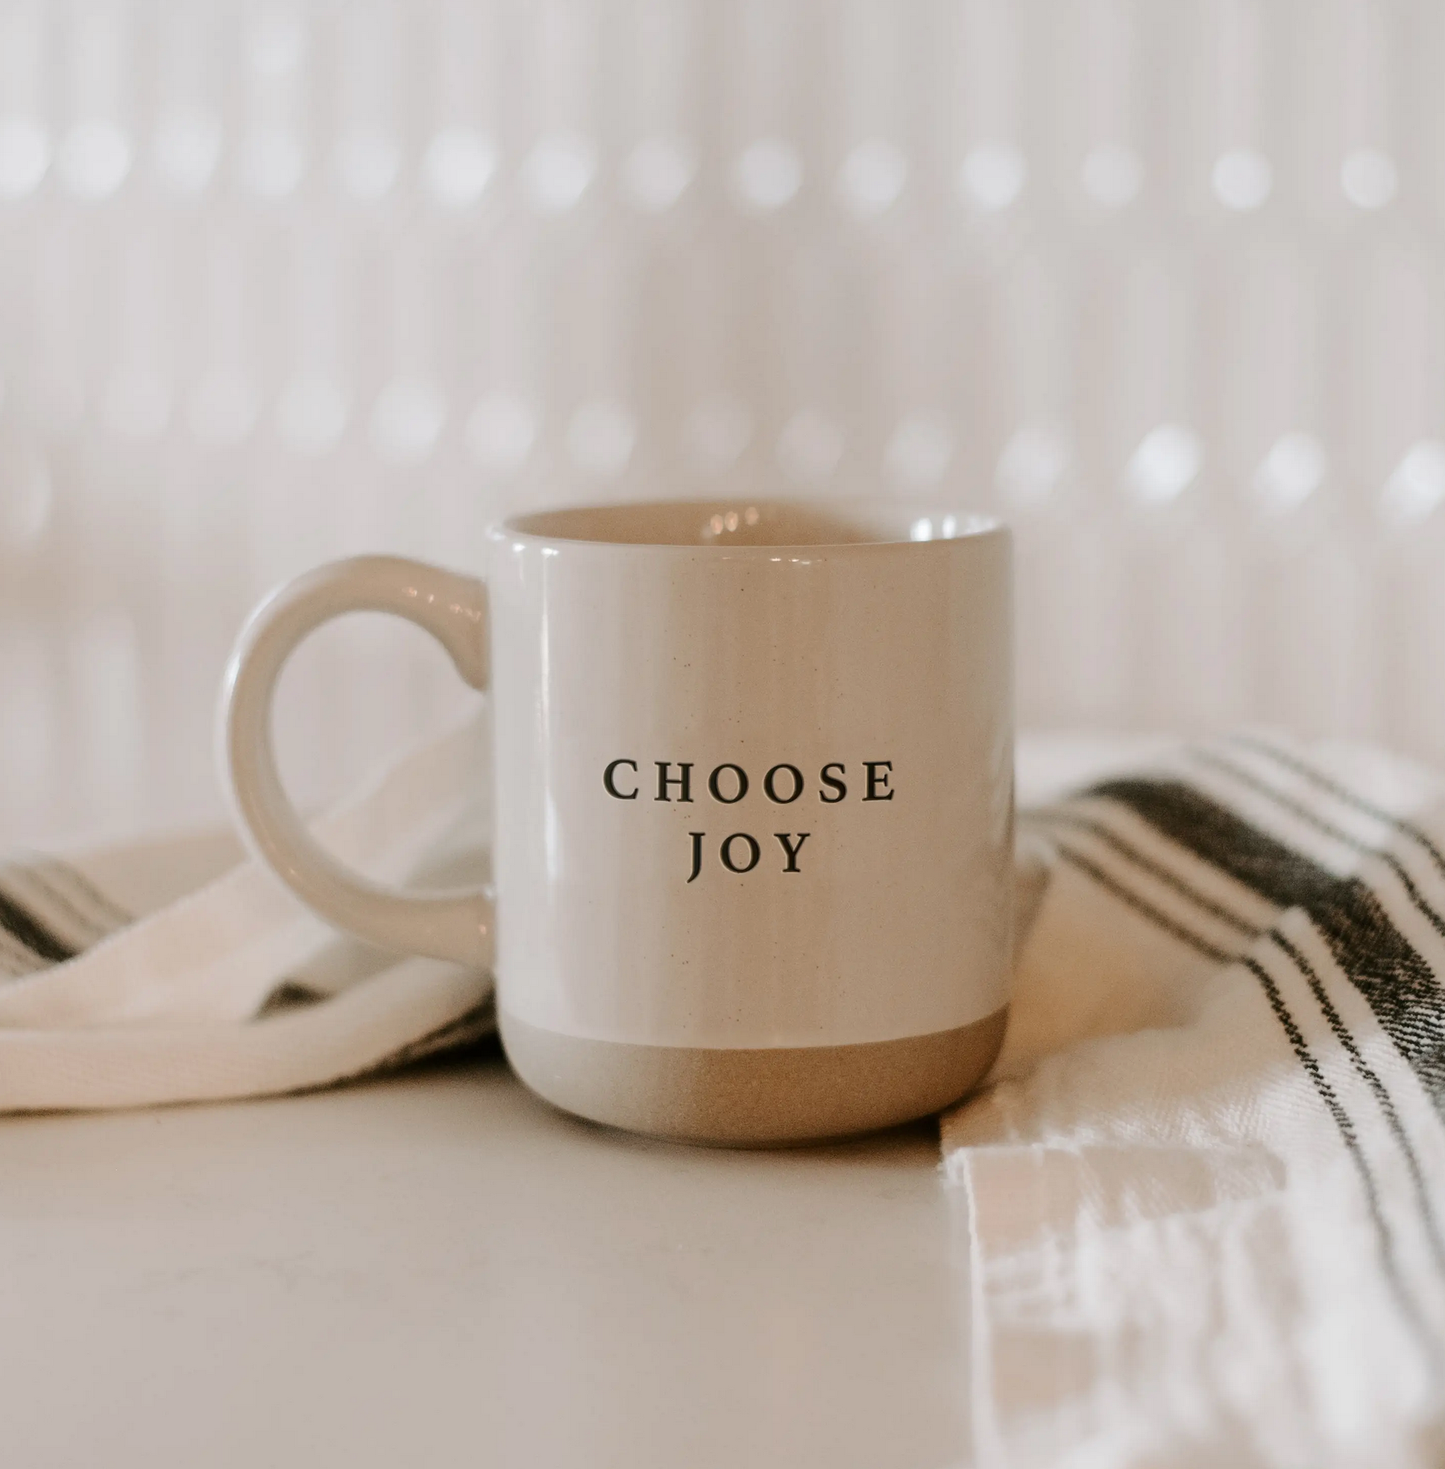 Choose Joy Stoneware Mug